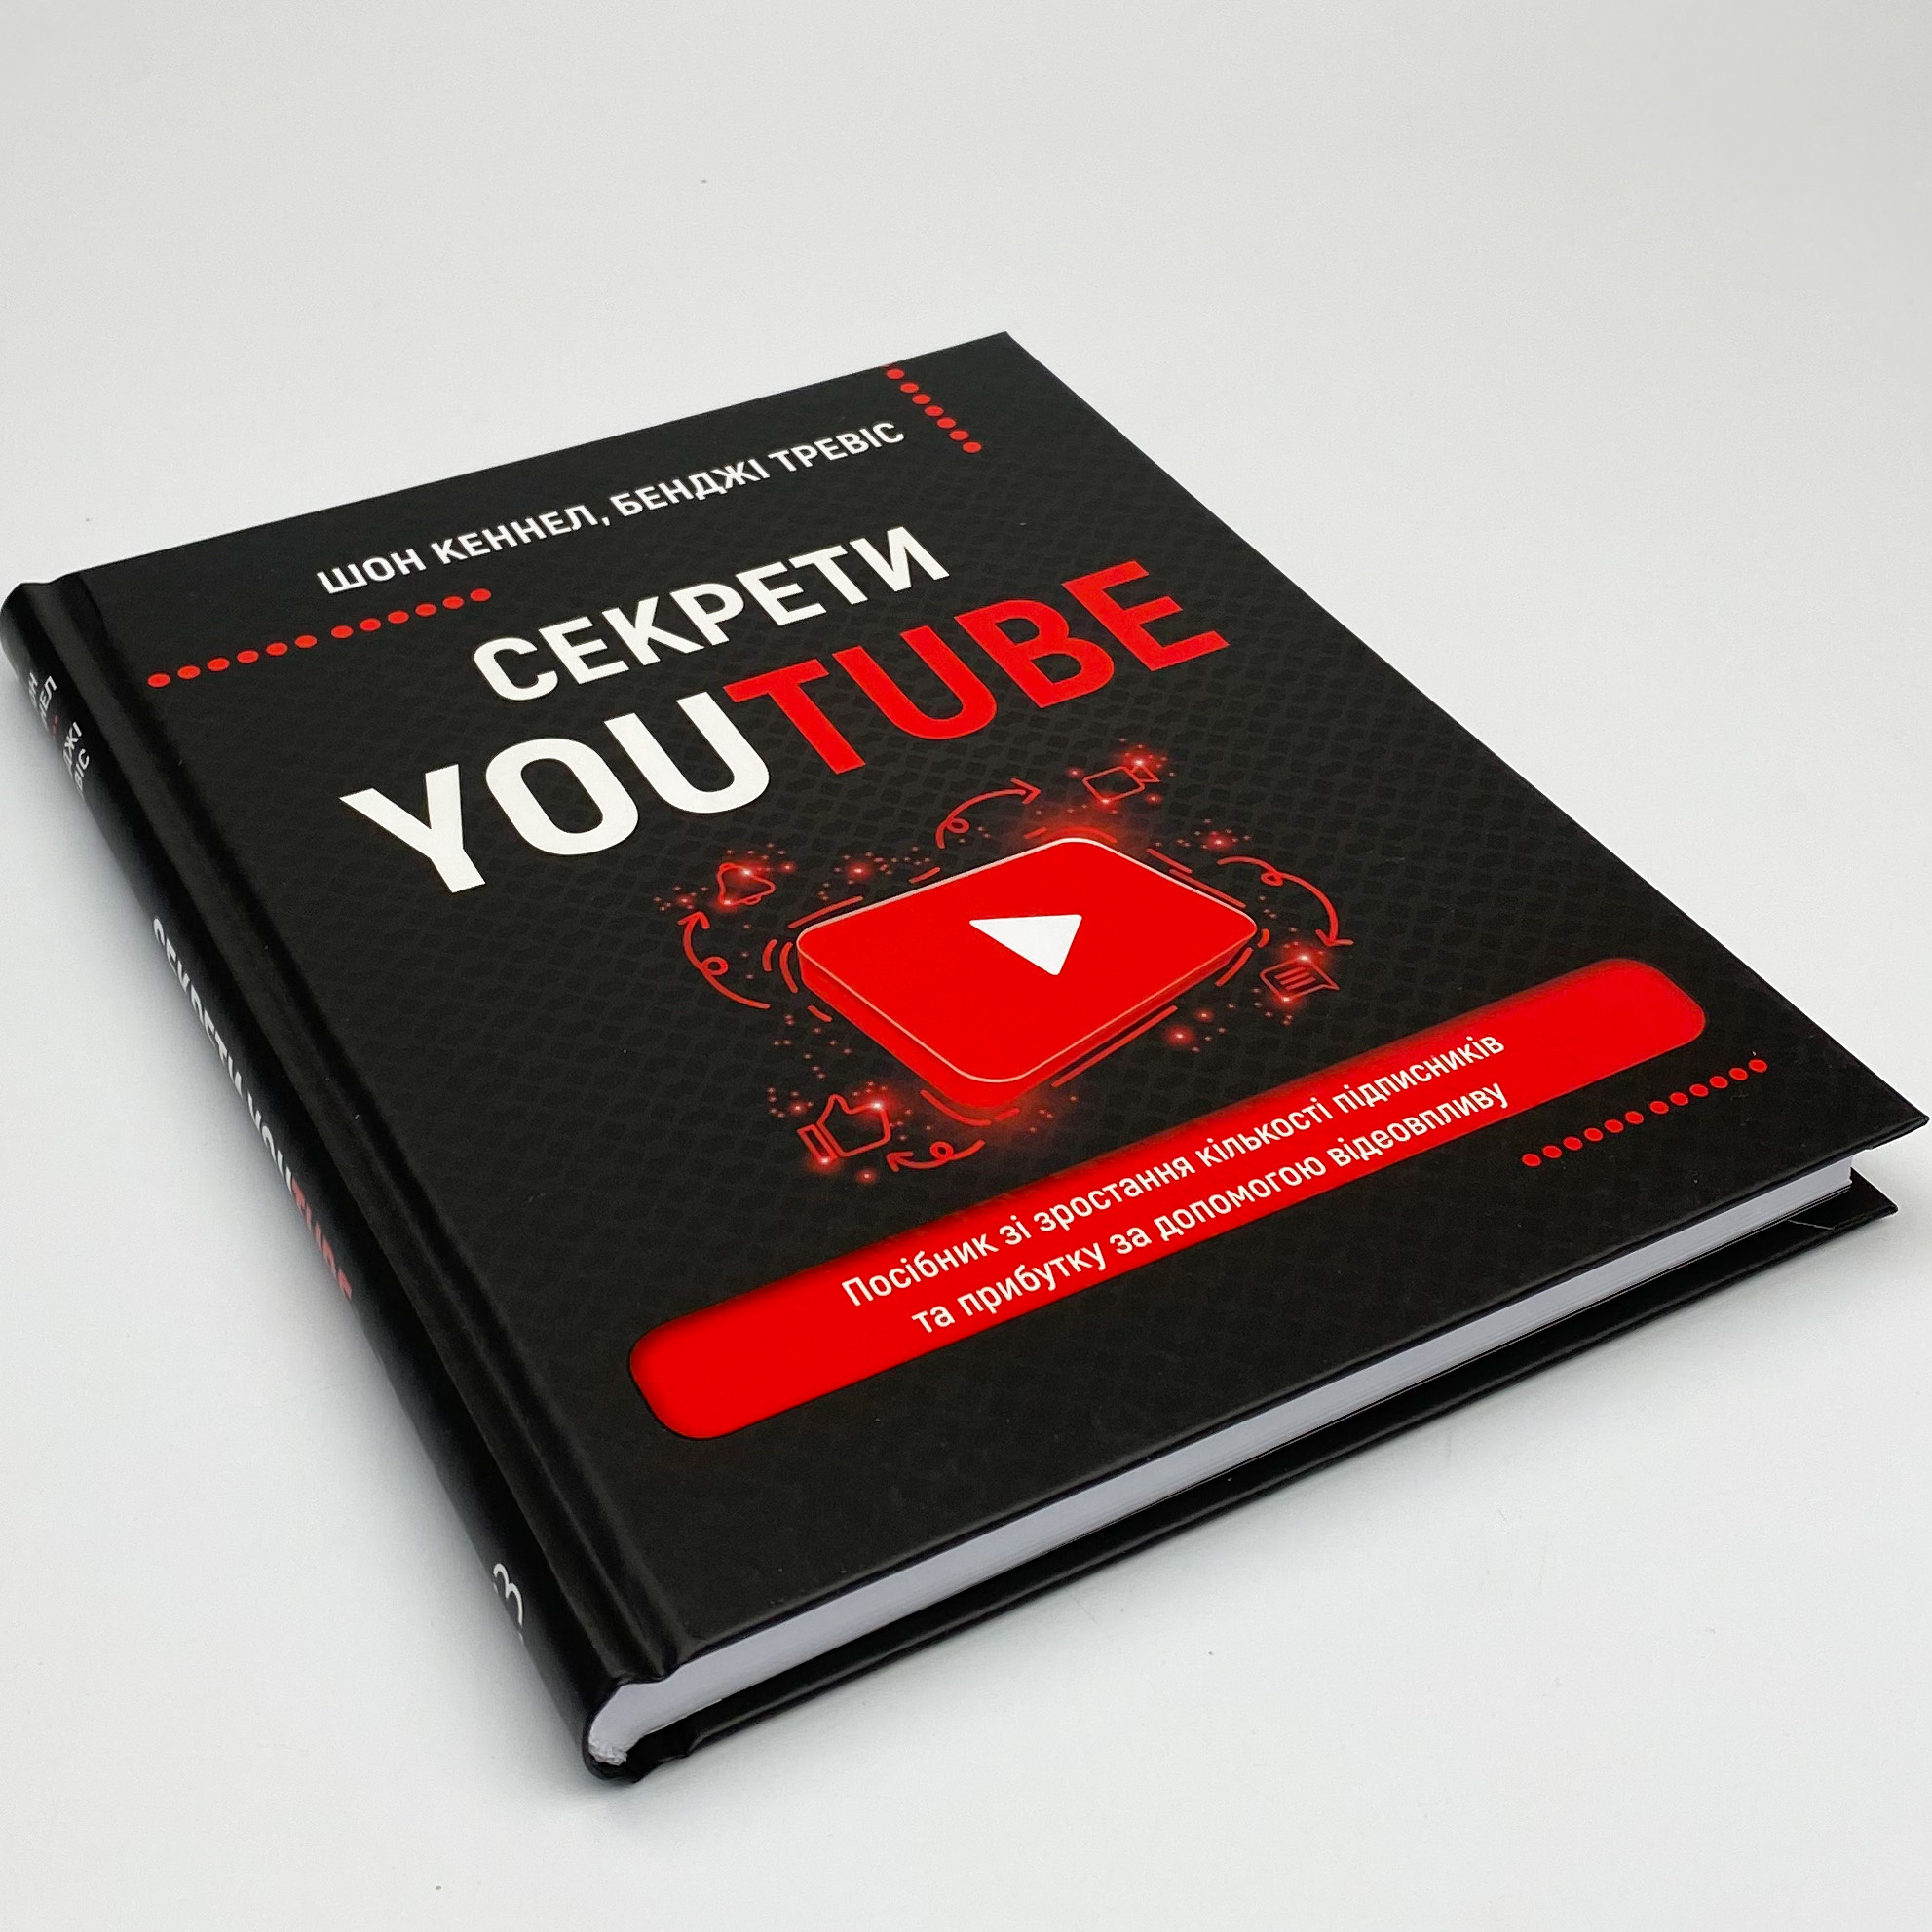 Секрети YouTube. Посібник зі зростання кількості підписників та прибутку за допомогою відеовпливу. Автор — Шон Кэннелл, Бенджи Трэвис. 